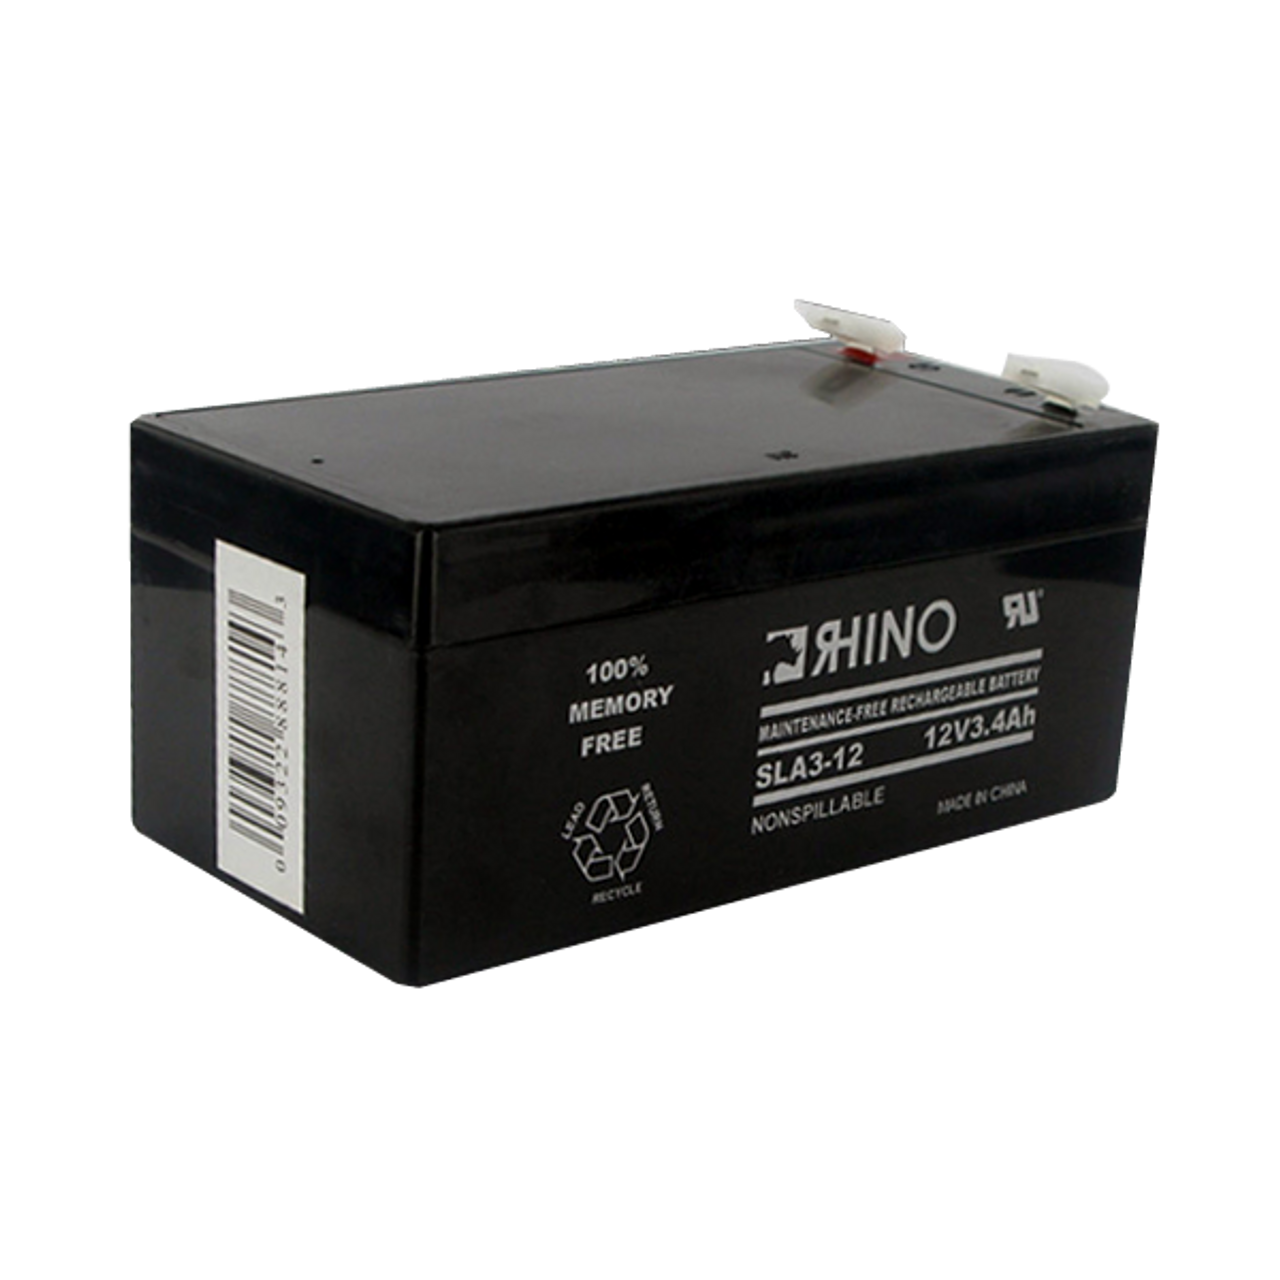 APC RBC35 UPS Back-Up Battery Cartridge #35 - 12 Volt 3.4 Ah